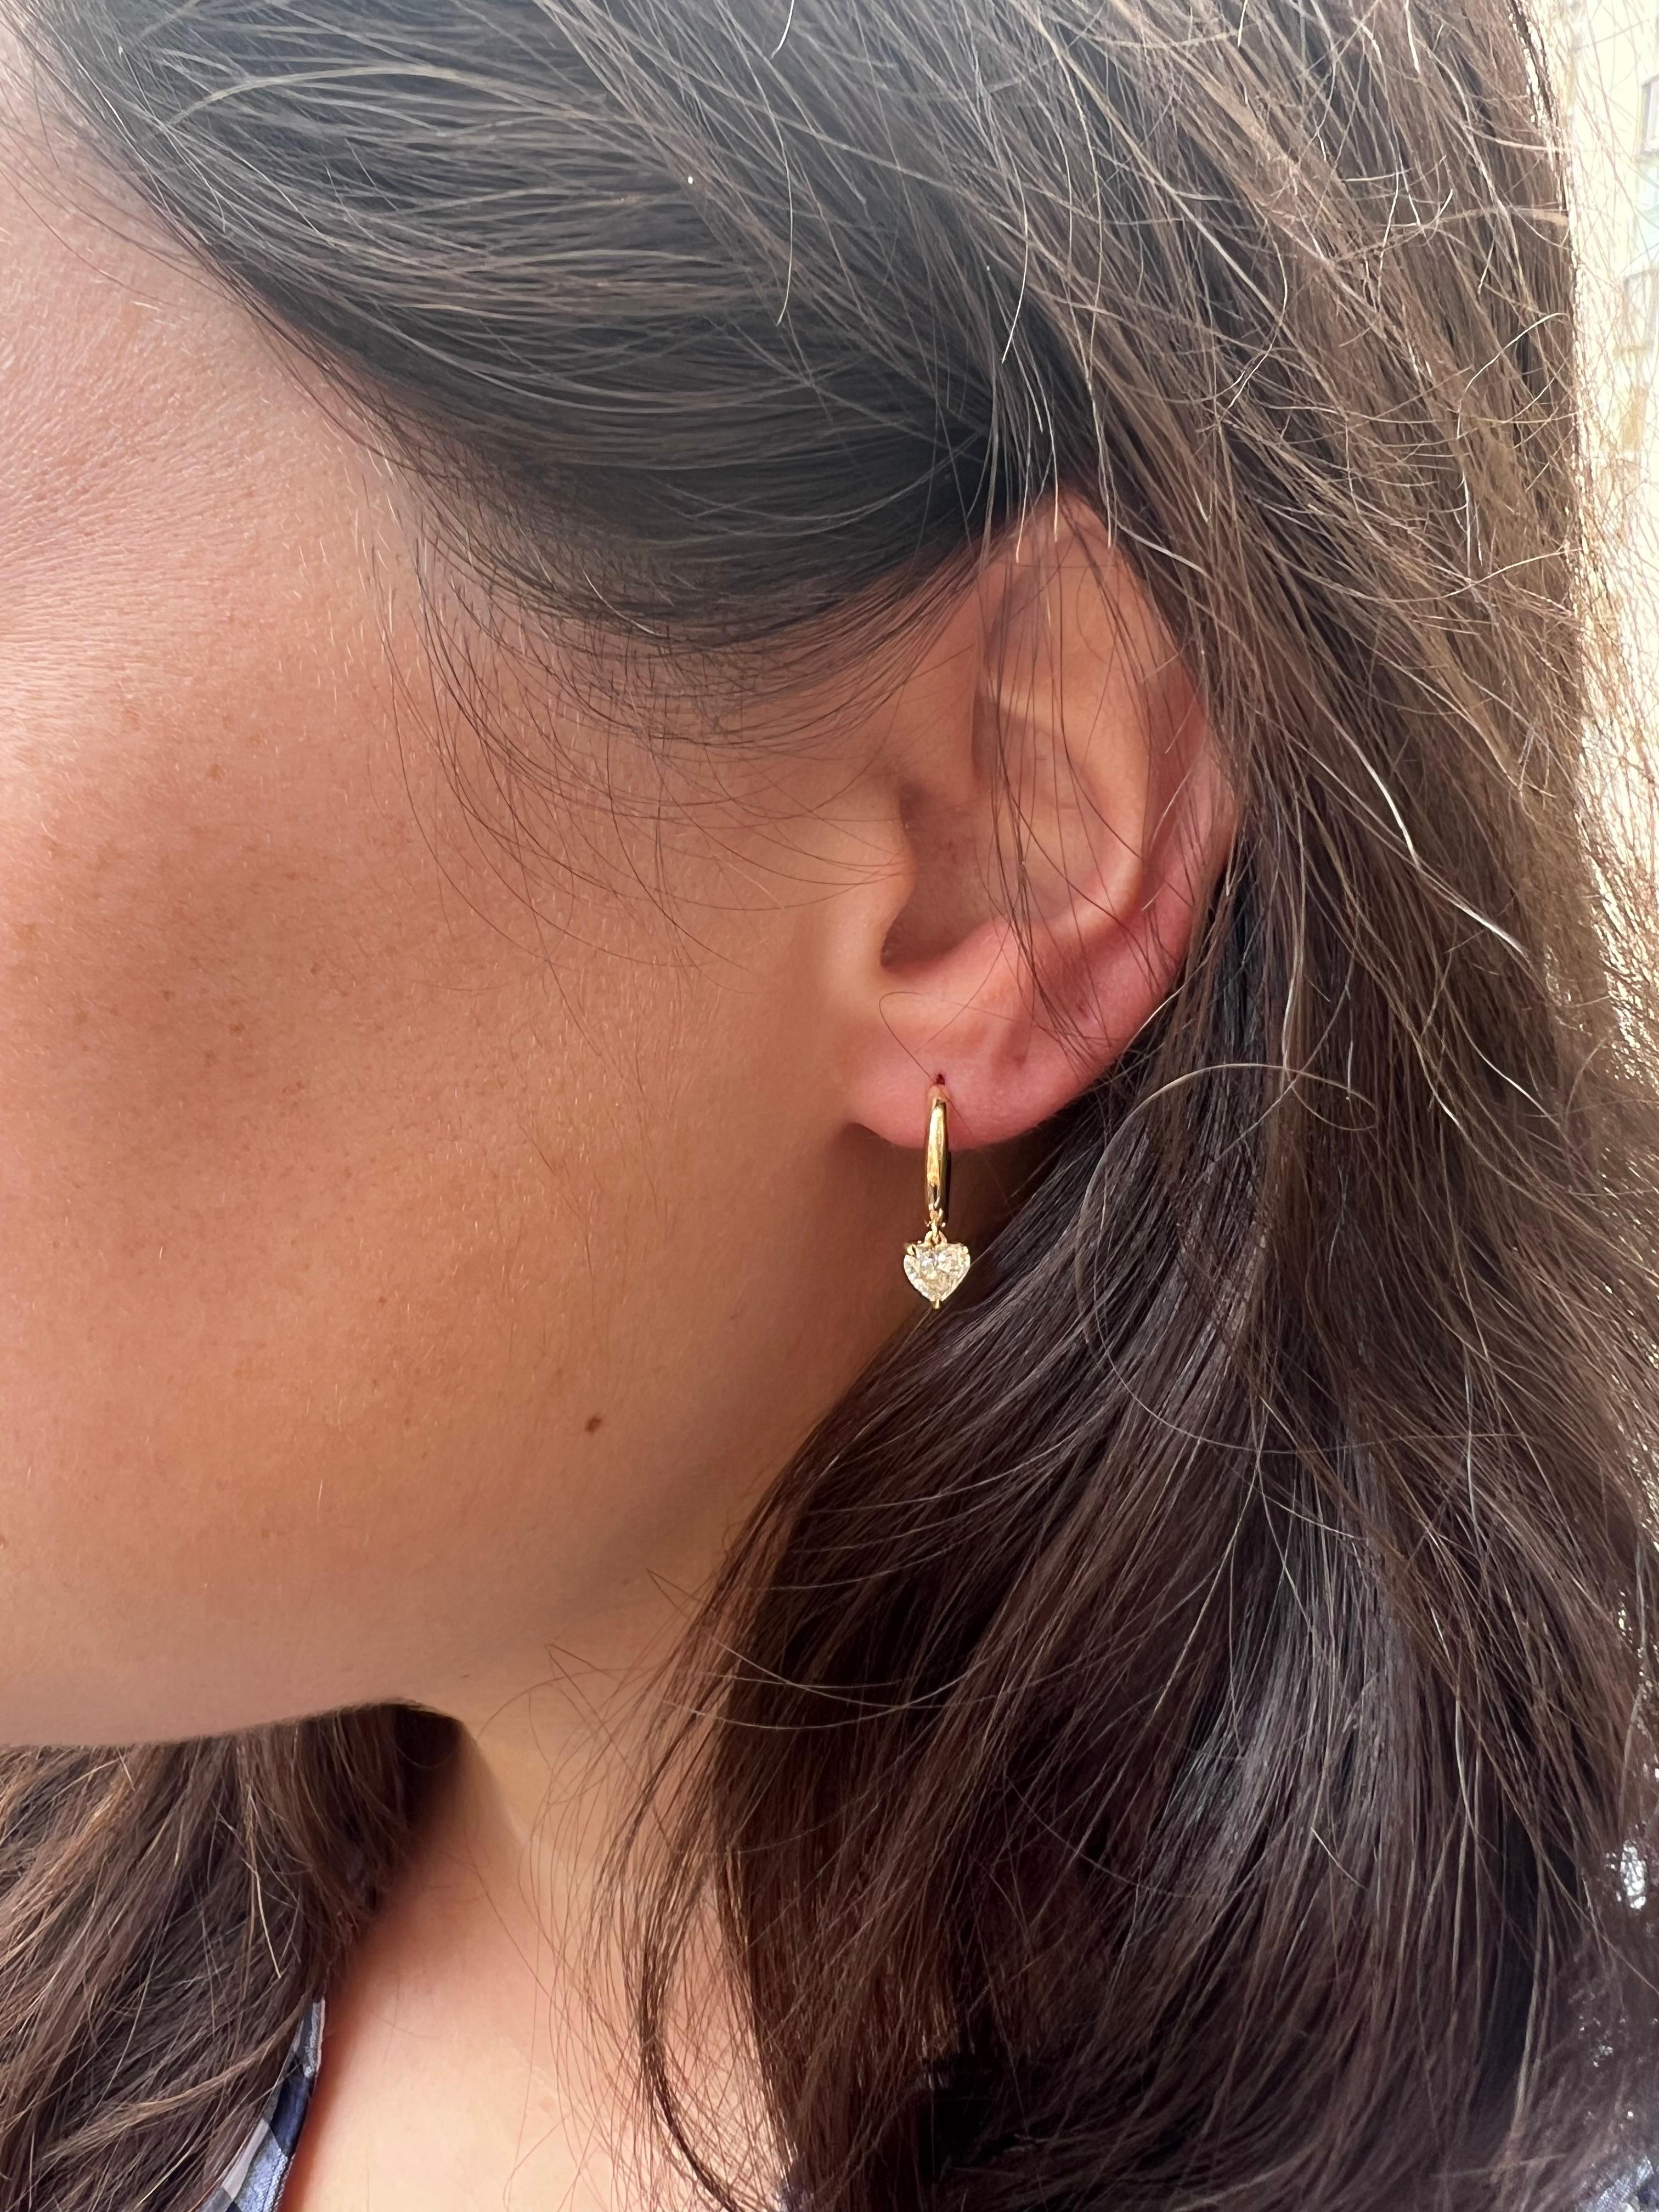 Diese bezaubernden Ohrringe von J. Birnbach sind perfekt für den Alltag, allein getragen oder als Teil einer Ohrparty! Die röhrenförmigen 18K gelben, runden Huggies sind 1,25 Zentimeter groß. An jedem Ohrring baumelt ein herzförmiger Diamant von